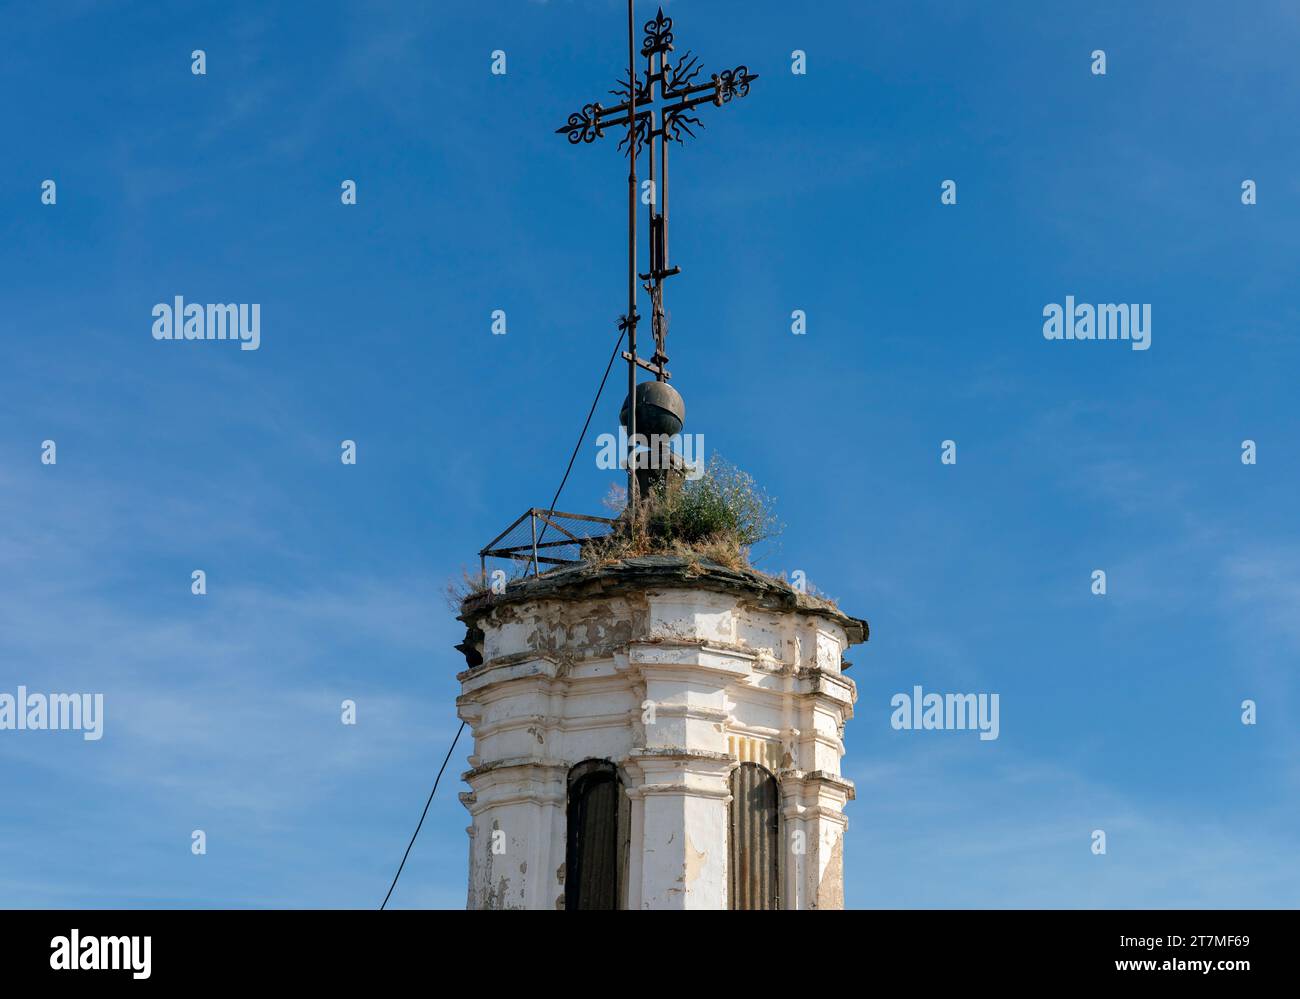 Europa, Spagna, Estremadura, Cáceres, la Chiesa di San Francisco Javier (Chiesa del sangue prezioso) che mostra la Torre sul tetto e il Crocifisso Foto Stock